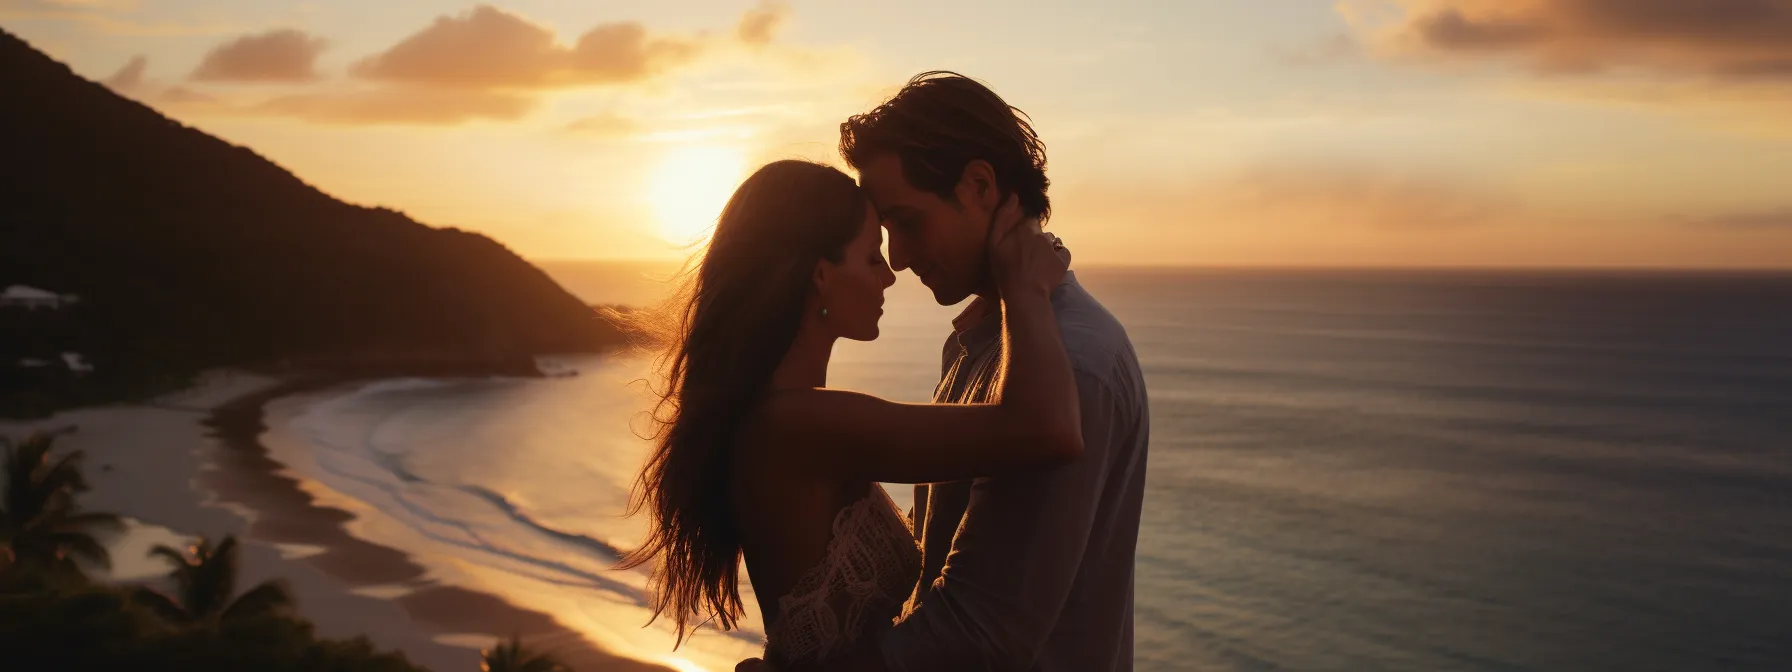 A couple enjoying a romantic sunset kiss at a beach resort.